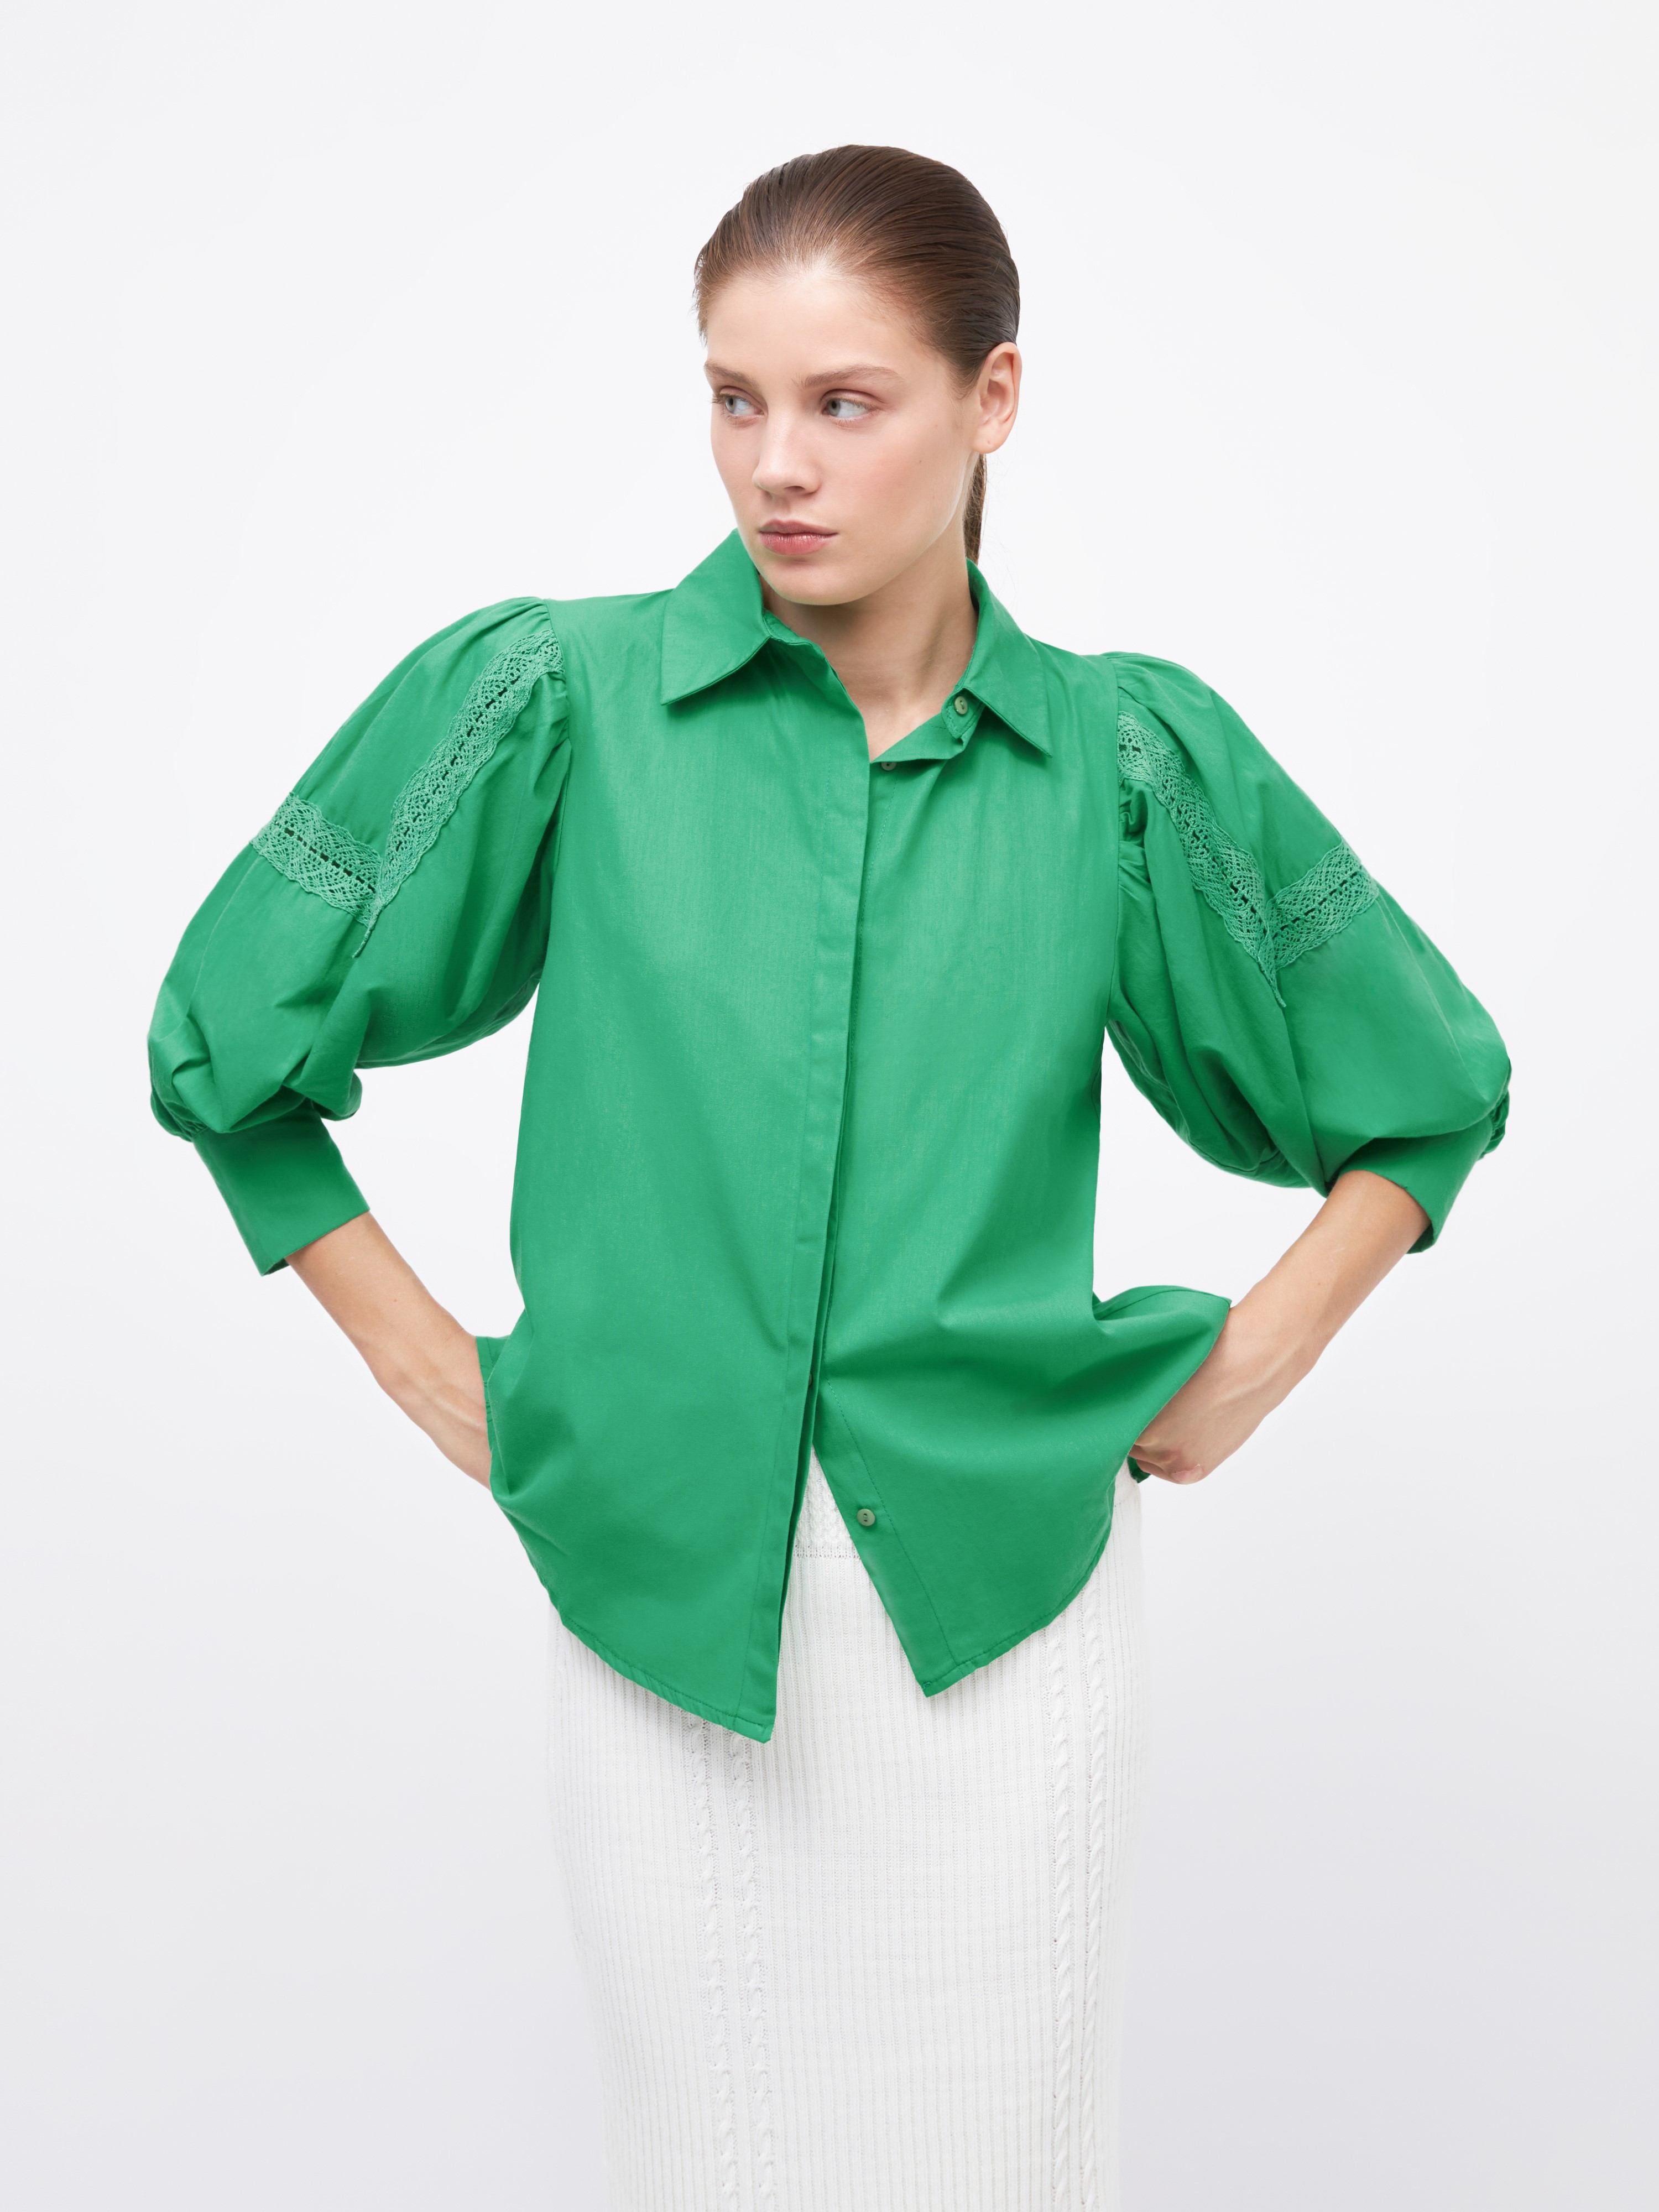 Рубашка женская Arive ARV-WS-10521-006 зелёная, размер XL